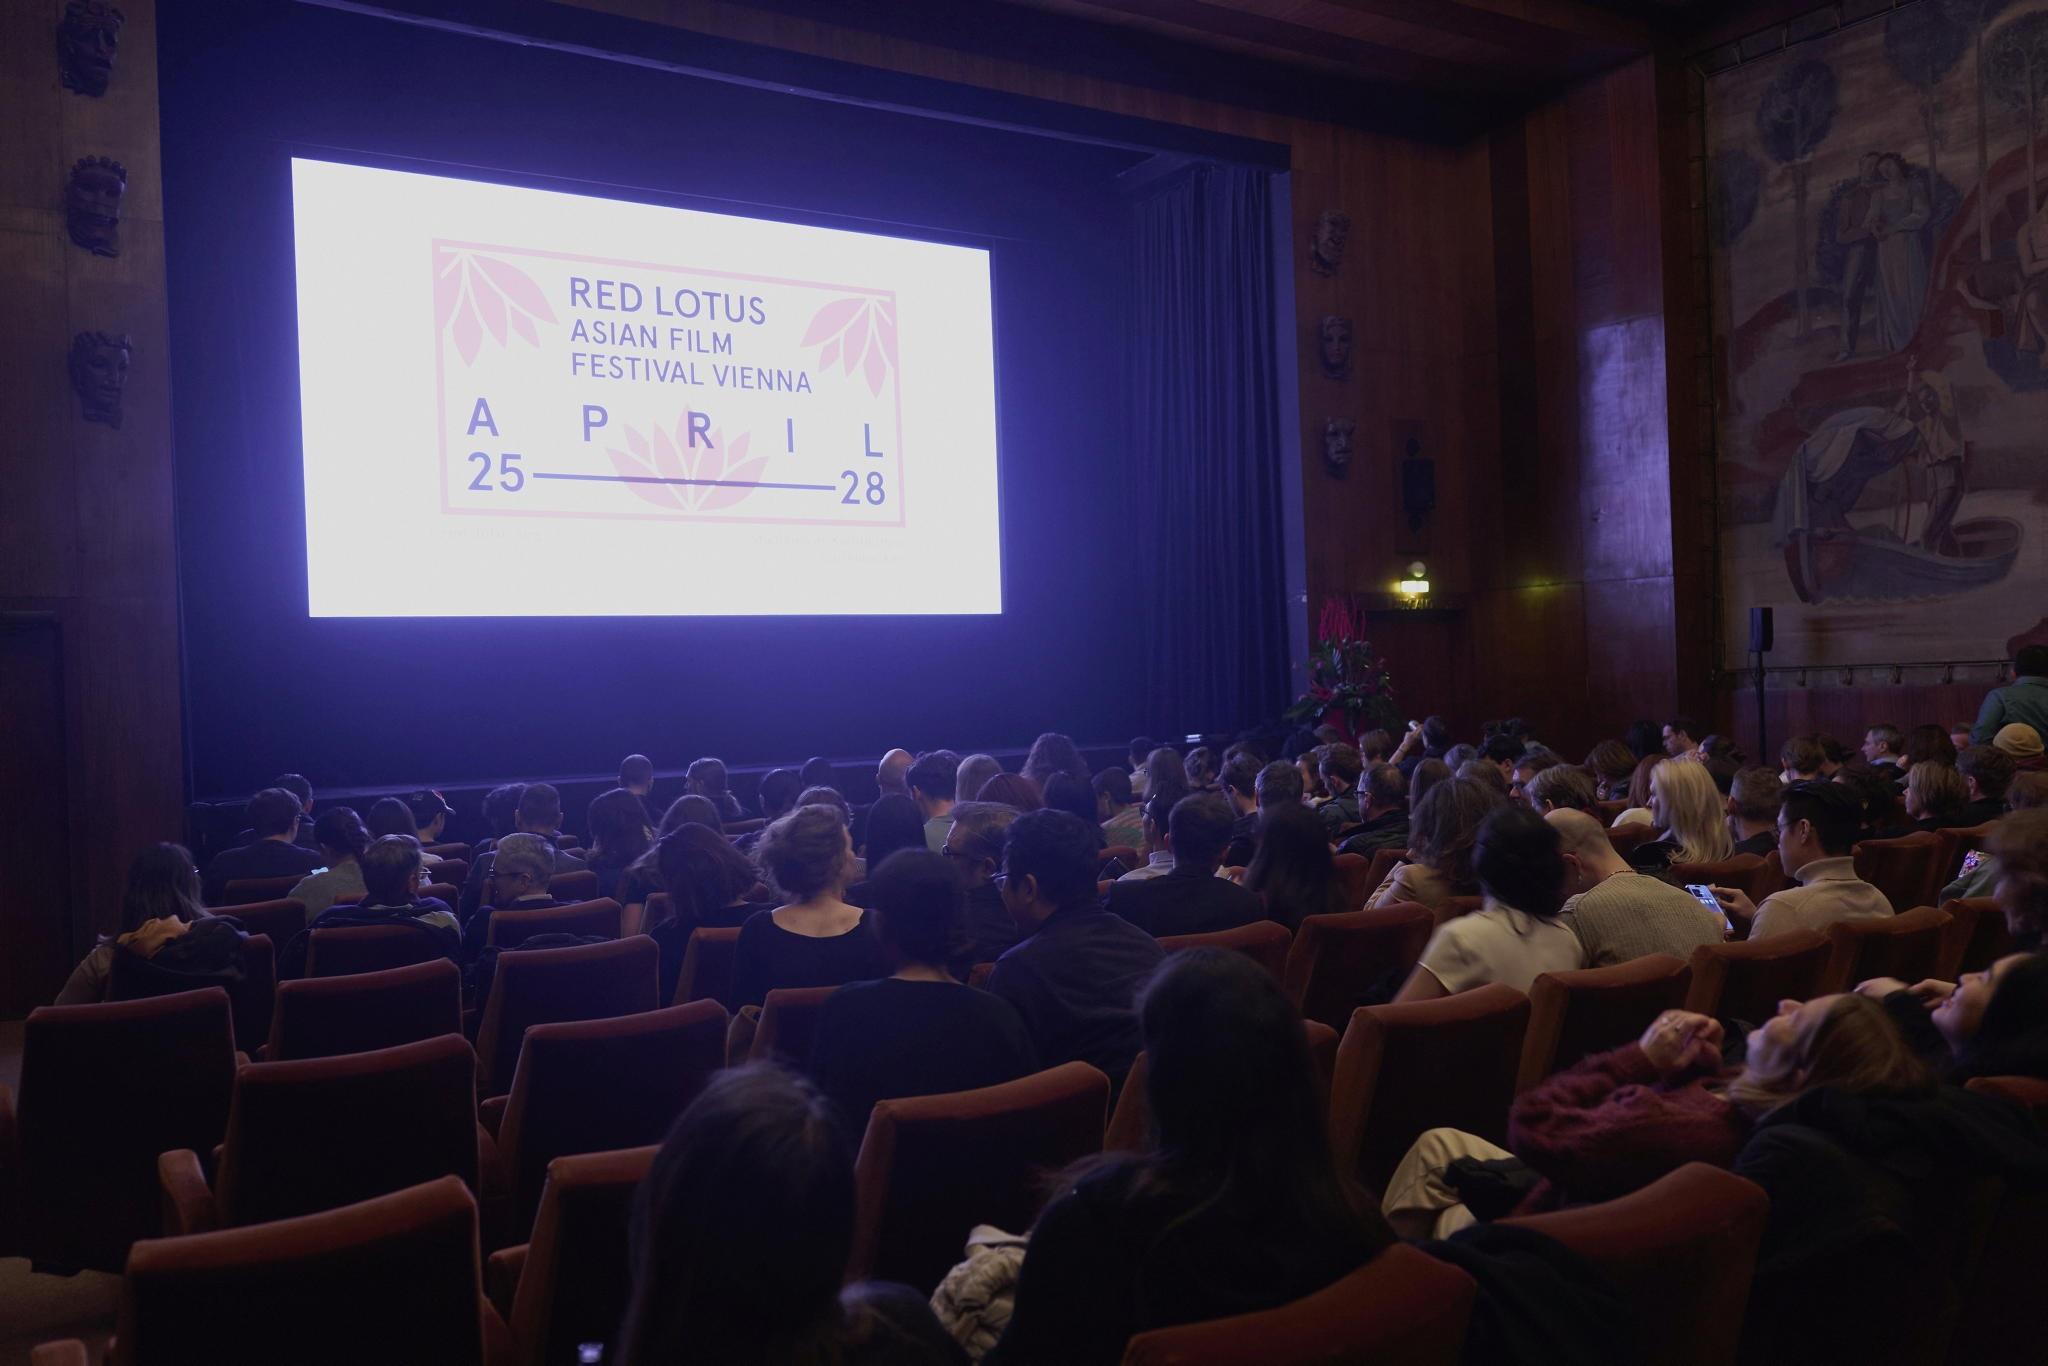 香港驻柏林经济贸易办事处支持第三届Red Lotus亚洲电影节放映两部香港电影。该电影节由四月二十五日至二十八日（维也纳时间）在维也纳举行。图示四月二十六日出席「香港环节」开幕放映会的观众。